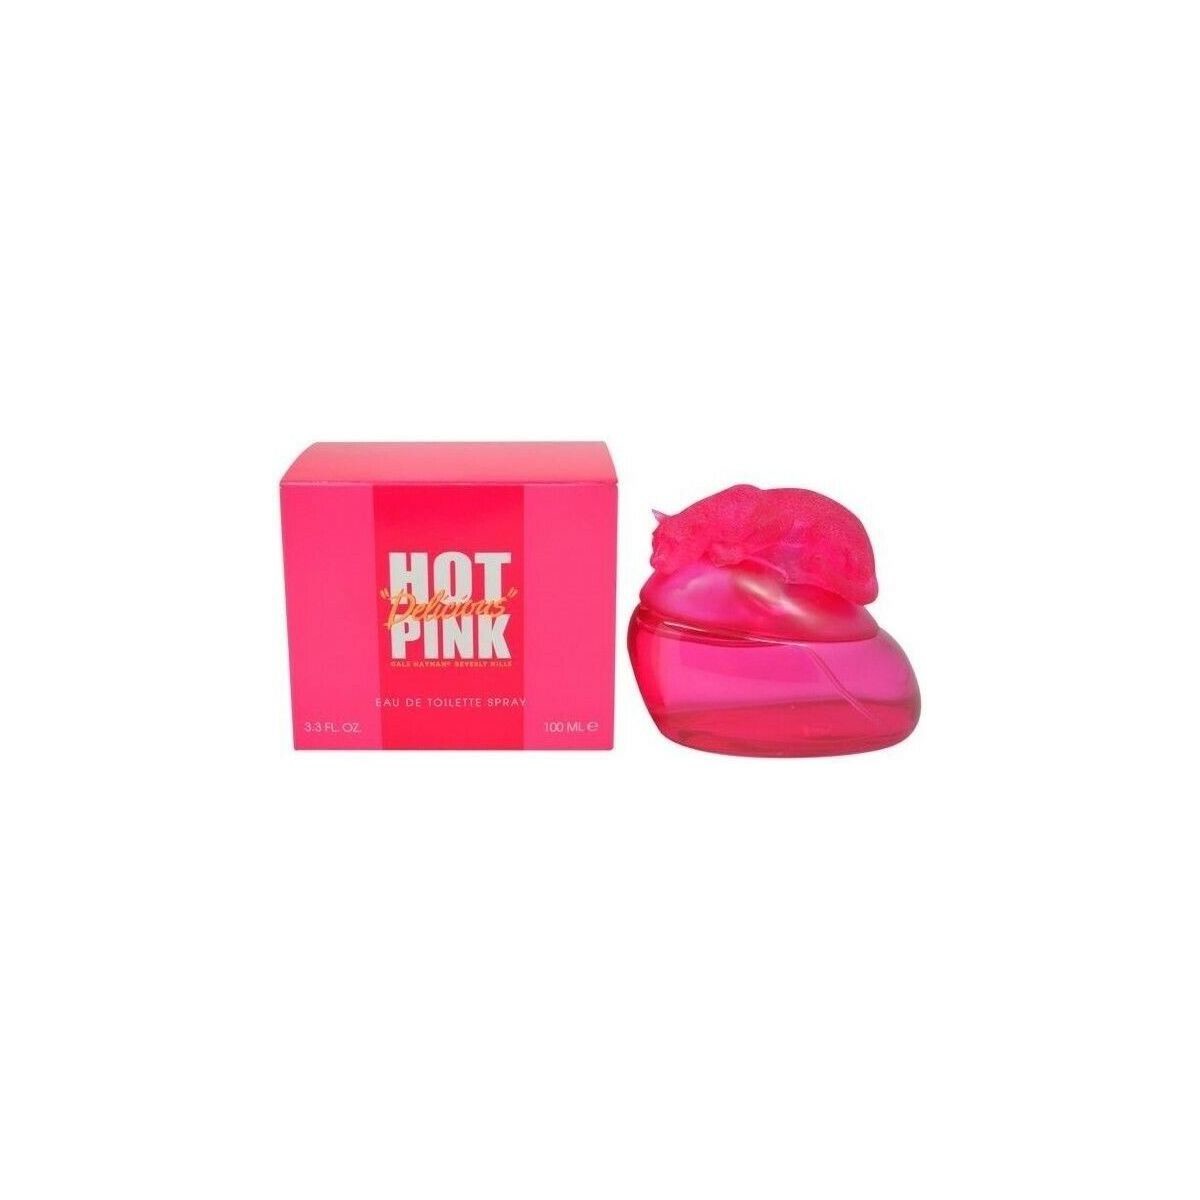 beleza Mulher Colónia Giorgio Beverly Hills Hot Pink Delicious  -colônia - 100ml - vaporizador Hot Pink Delicious  -cologne - 100ml - spray